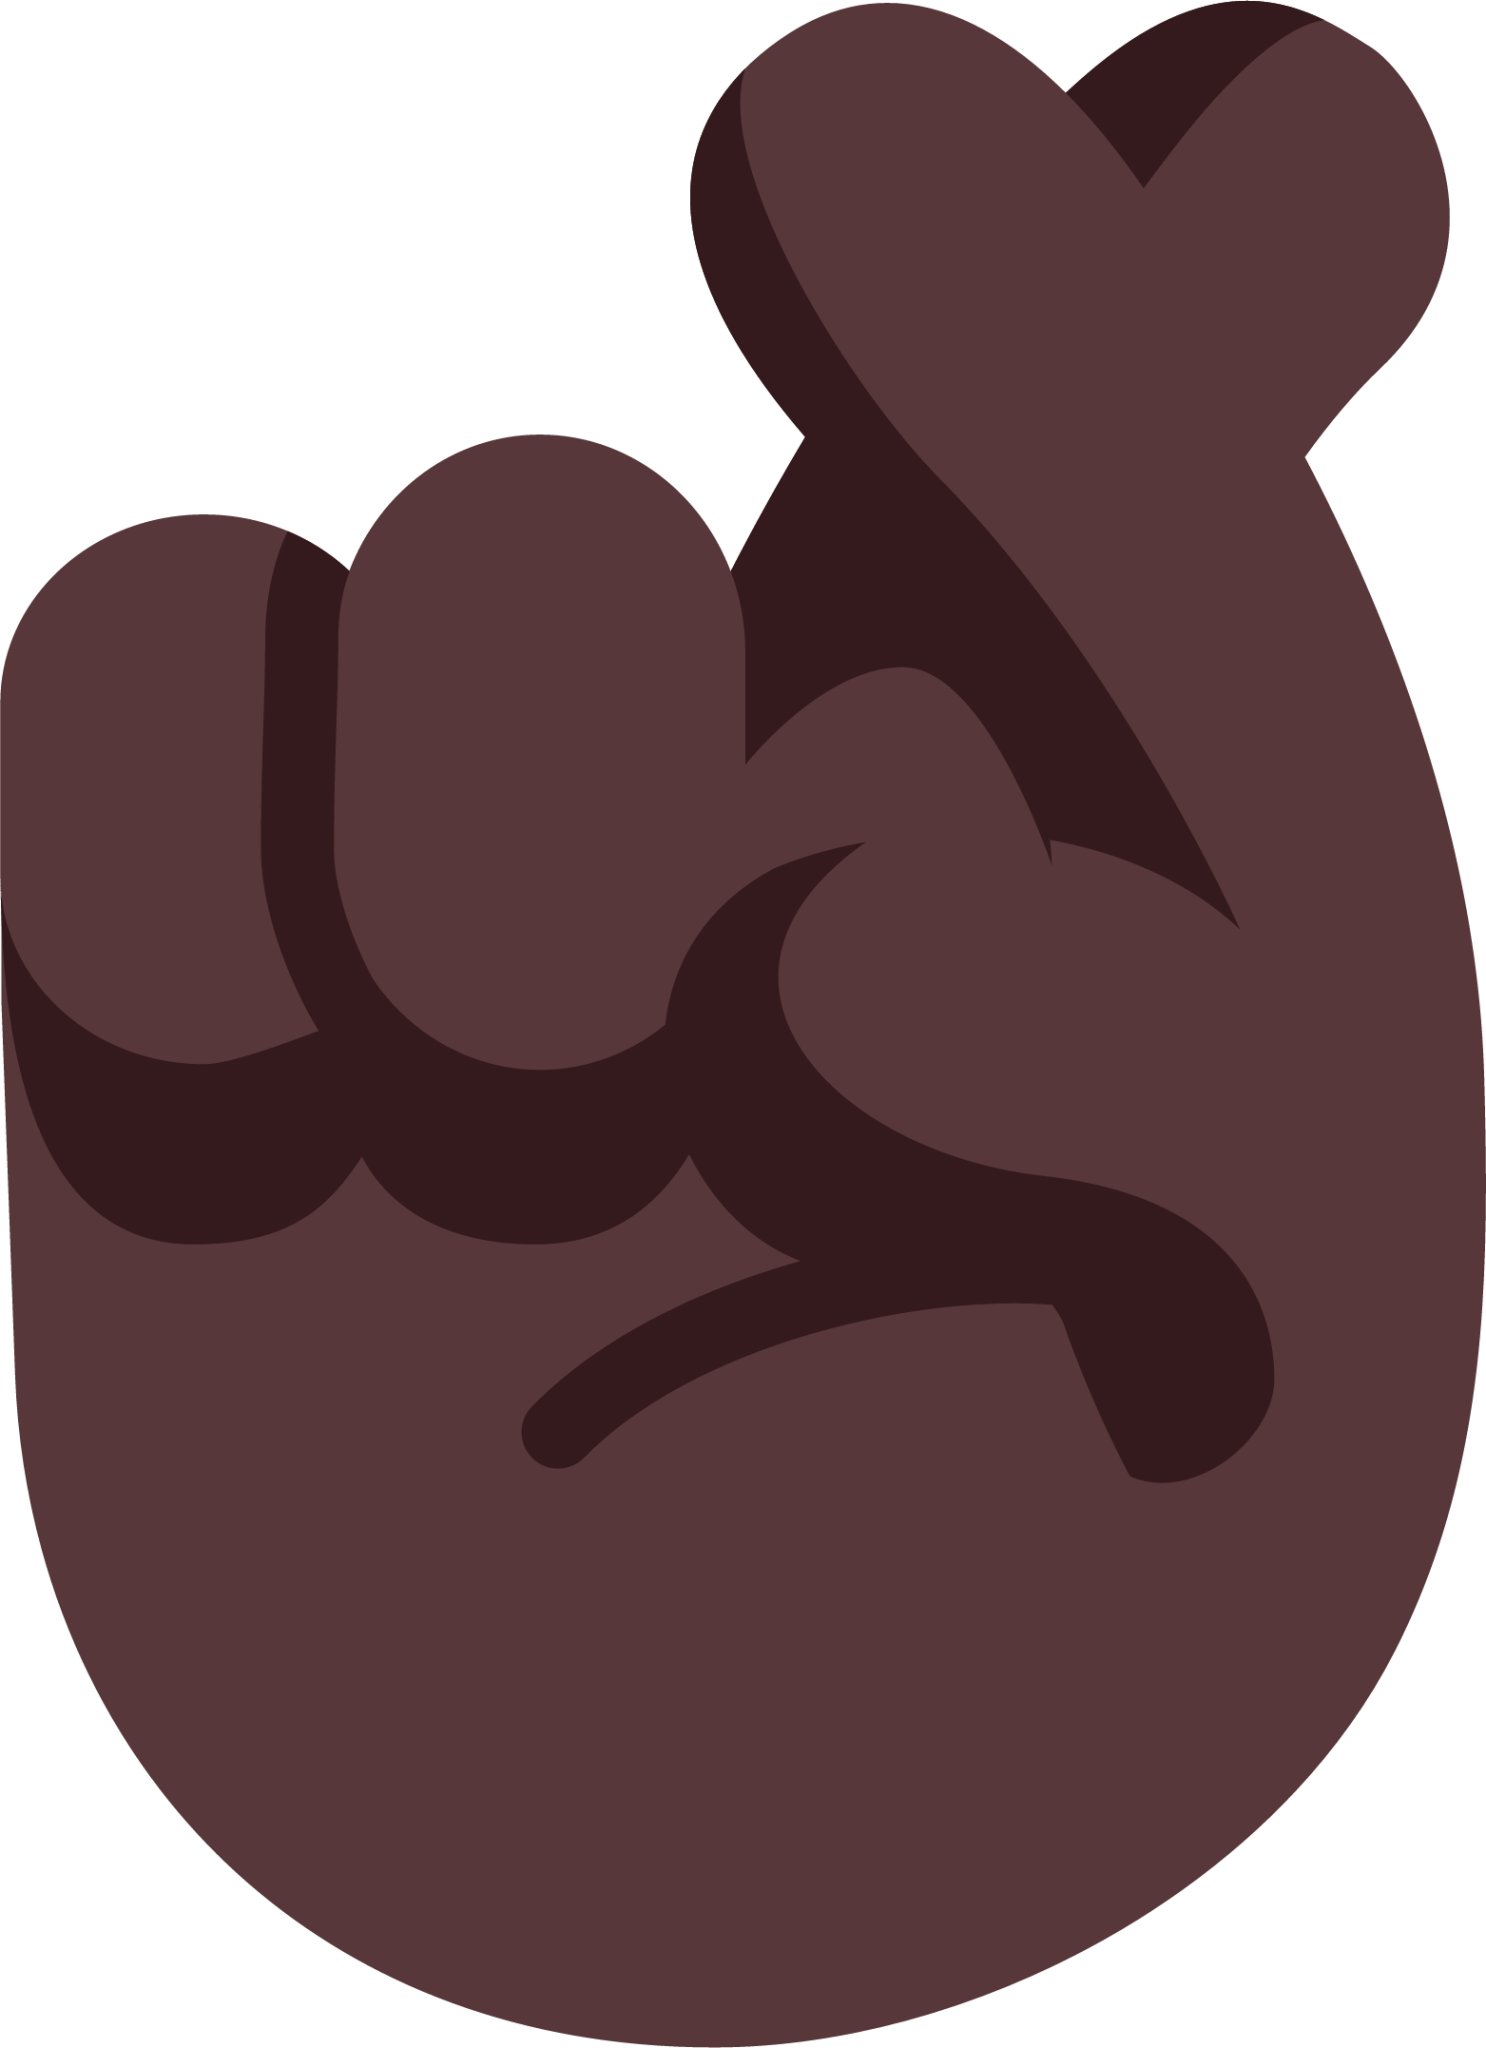 crossed fingers dark emoji